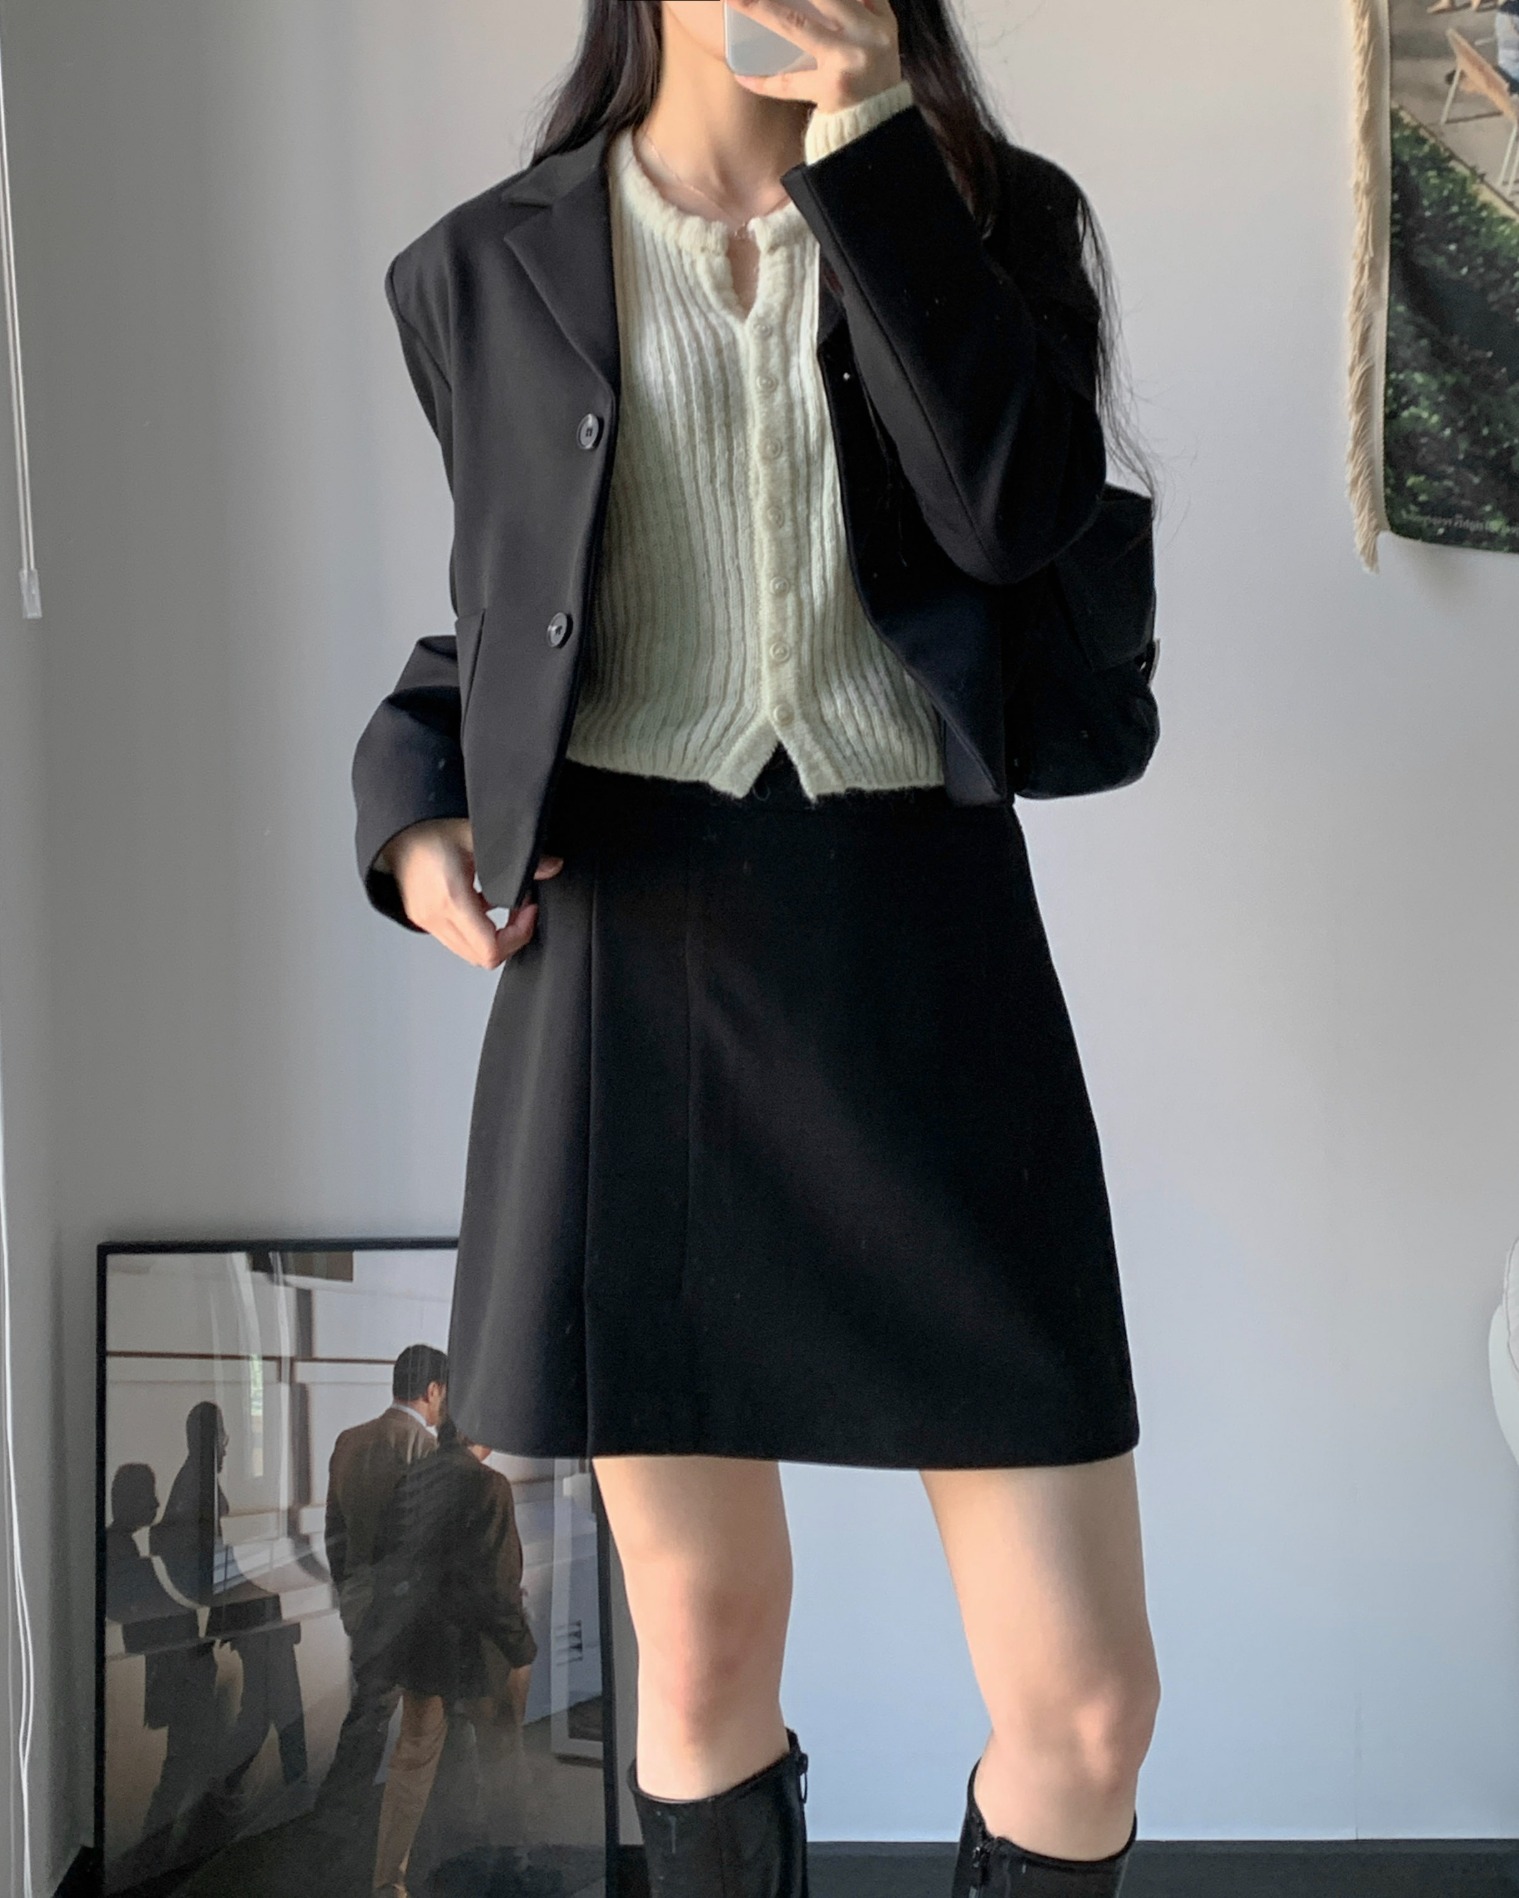 Formal set up - skirt